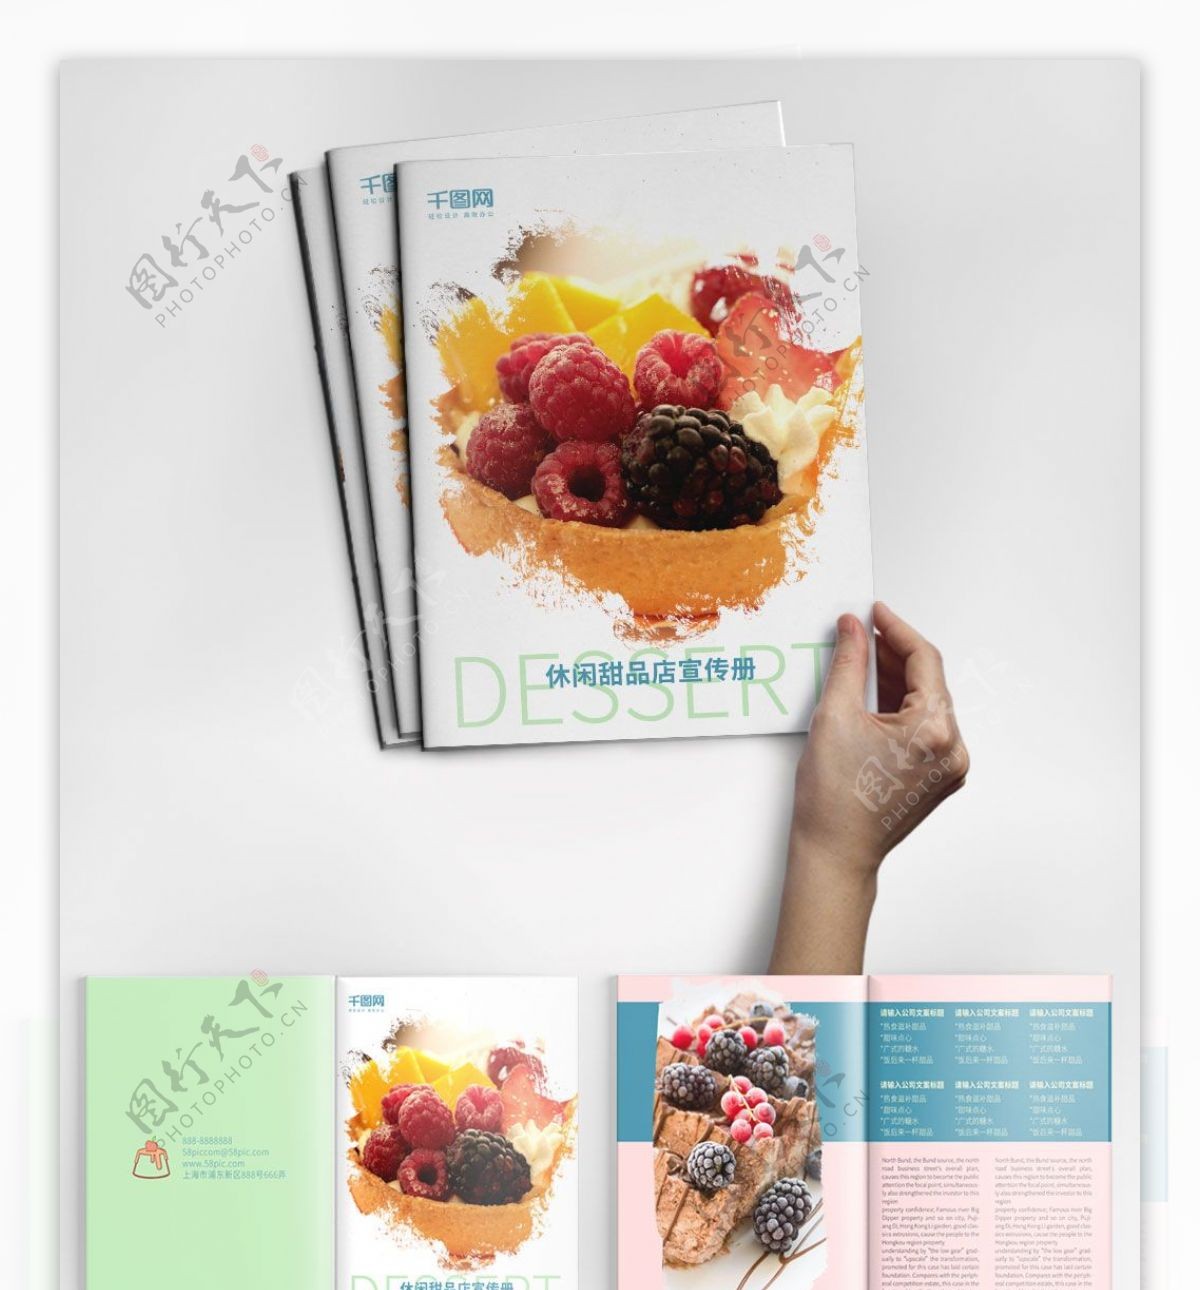 简约时尚甜品店宣传画册设计PSD模板